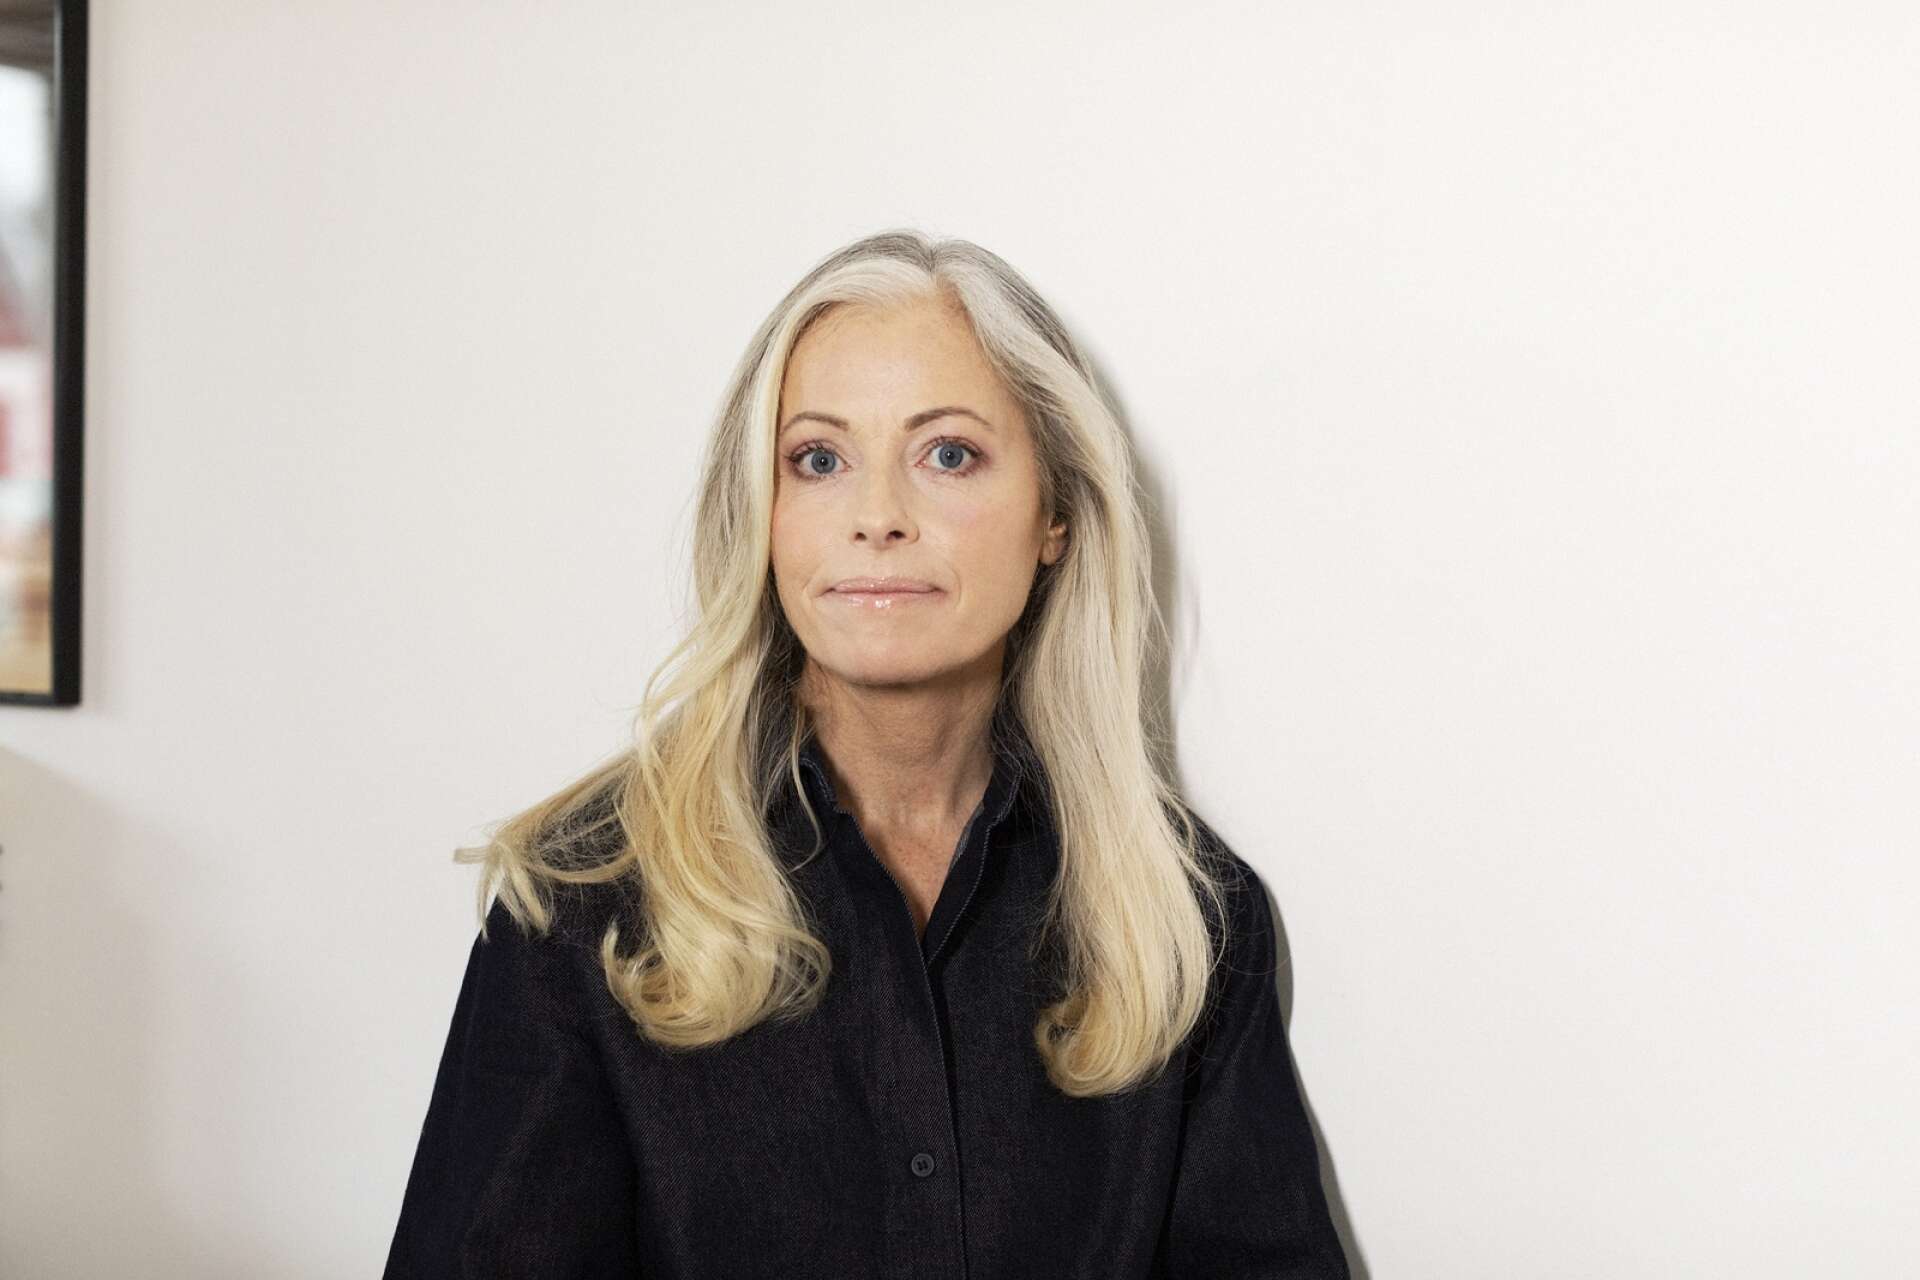 Mimmi Jensen Gellerhed, född 1970, bor i Stockholm. Romanen Vaken är hennes debut och för den nominerades hon både till Studieförbundet Vuxenskolans författarpris och Borås Tidnings Debutantpris under 2022.